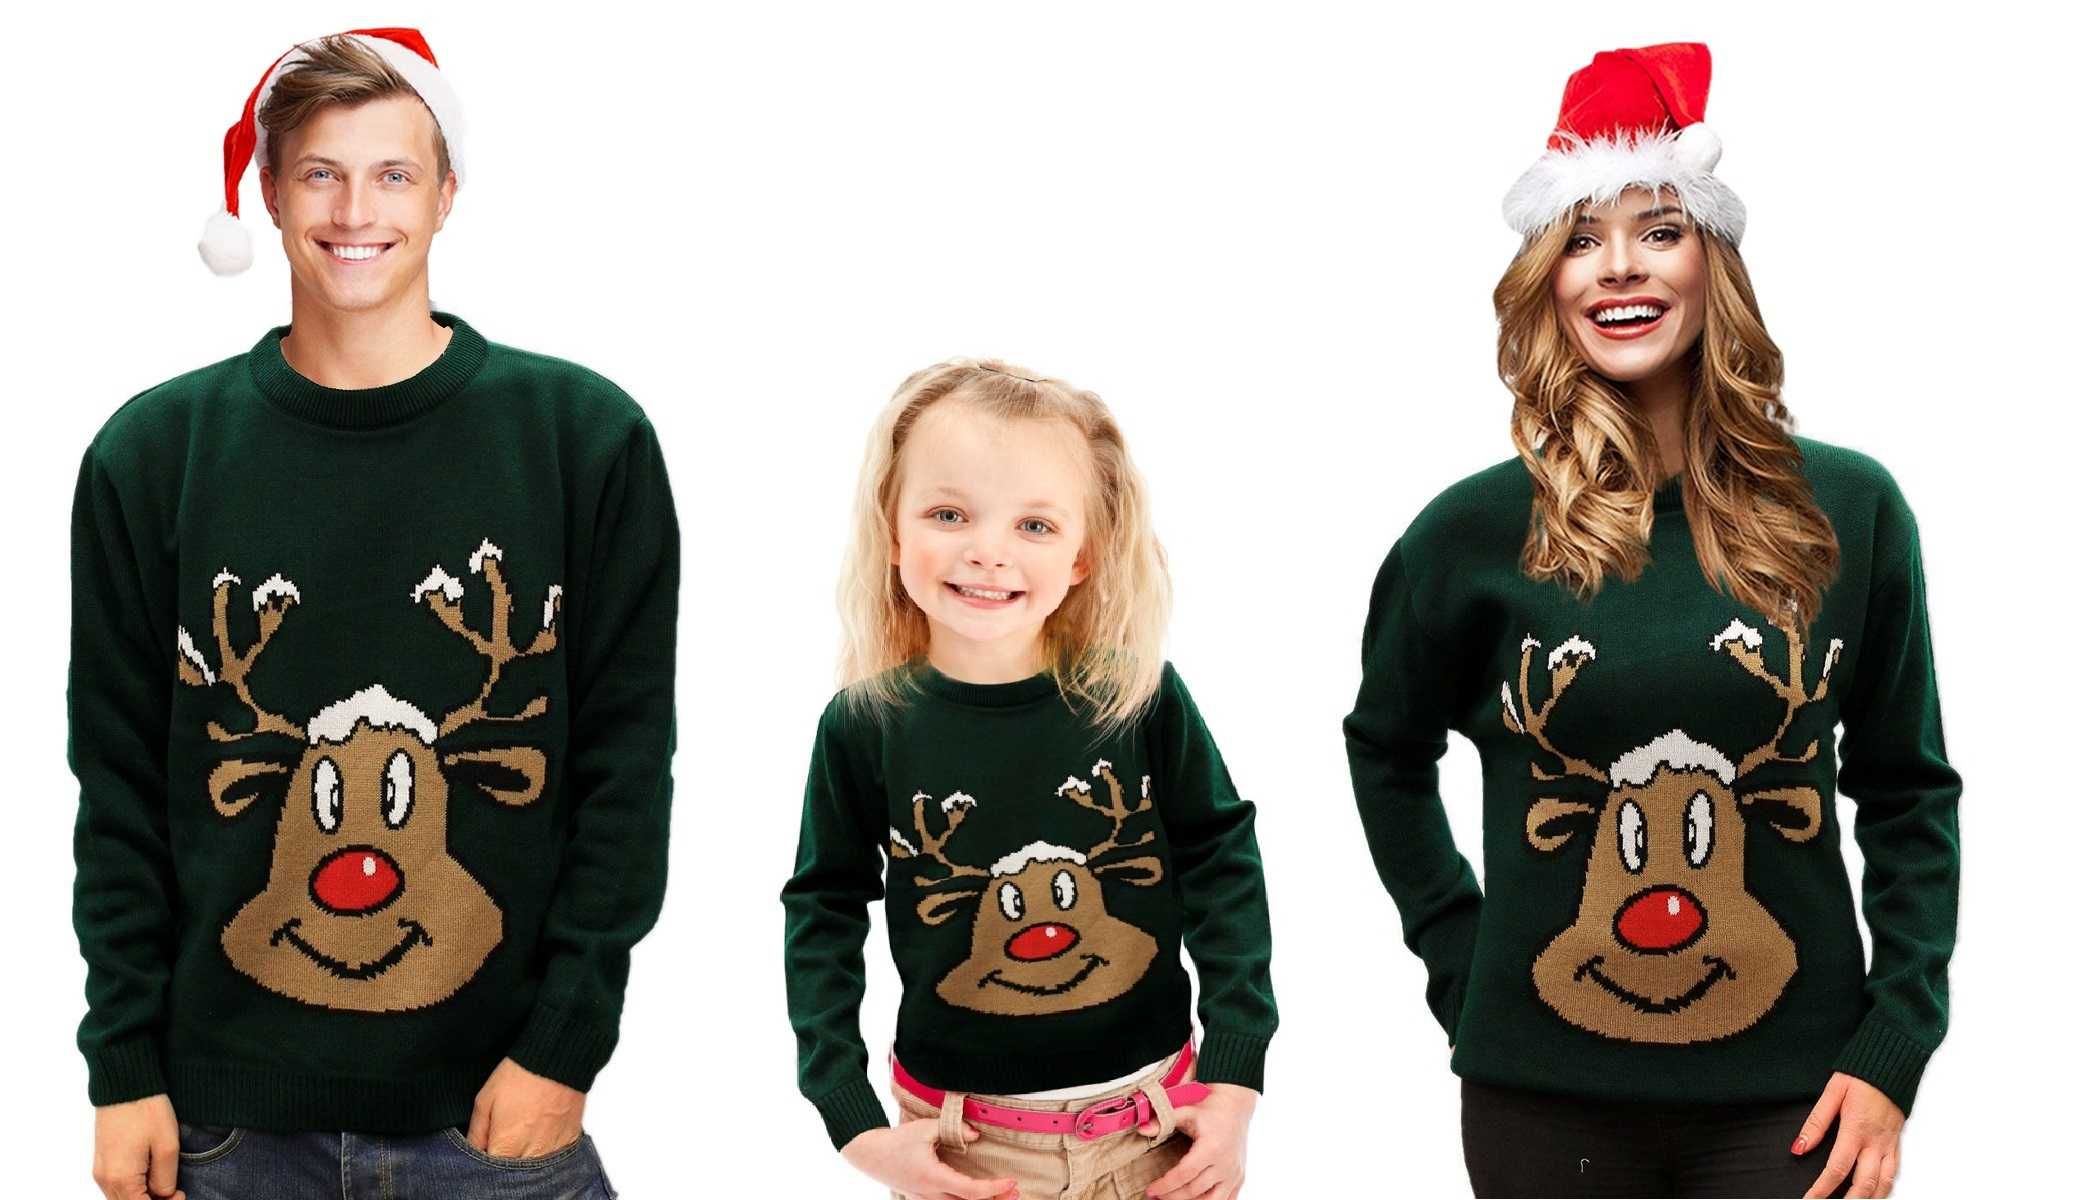 Sweter Świąteczny - Renifer Zielony - Swetry Świąteczne wiele wzorów!